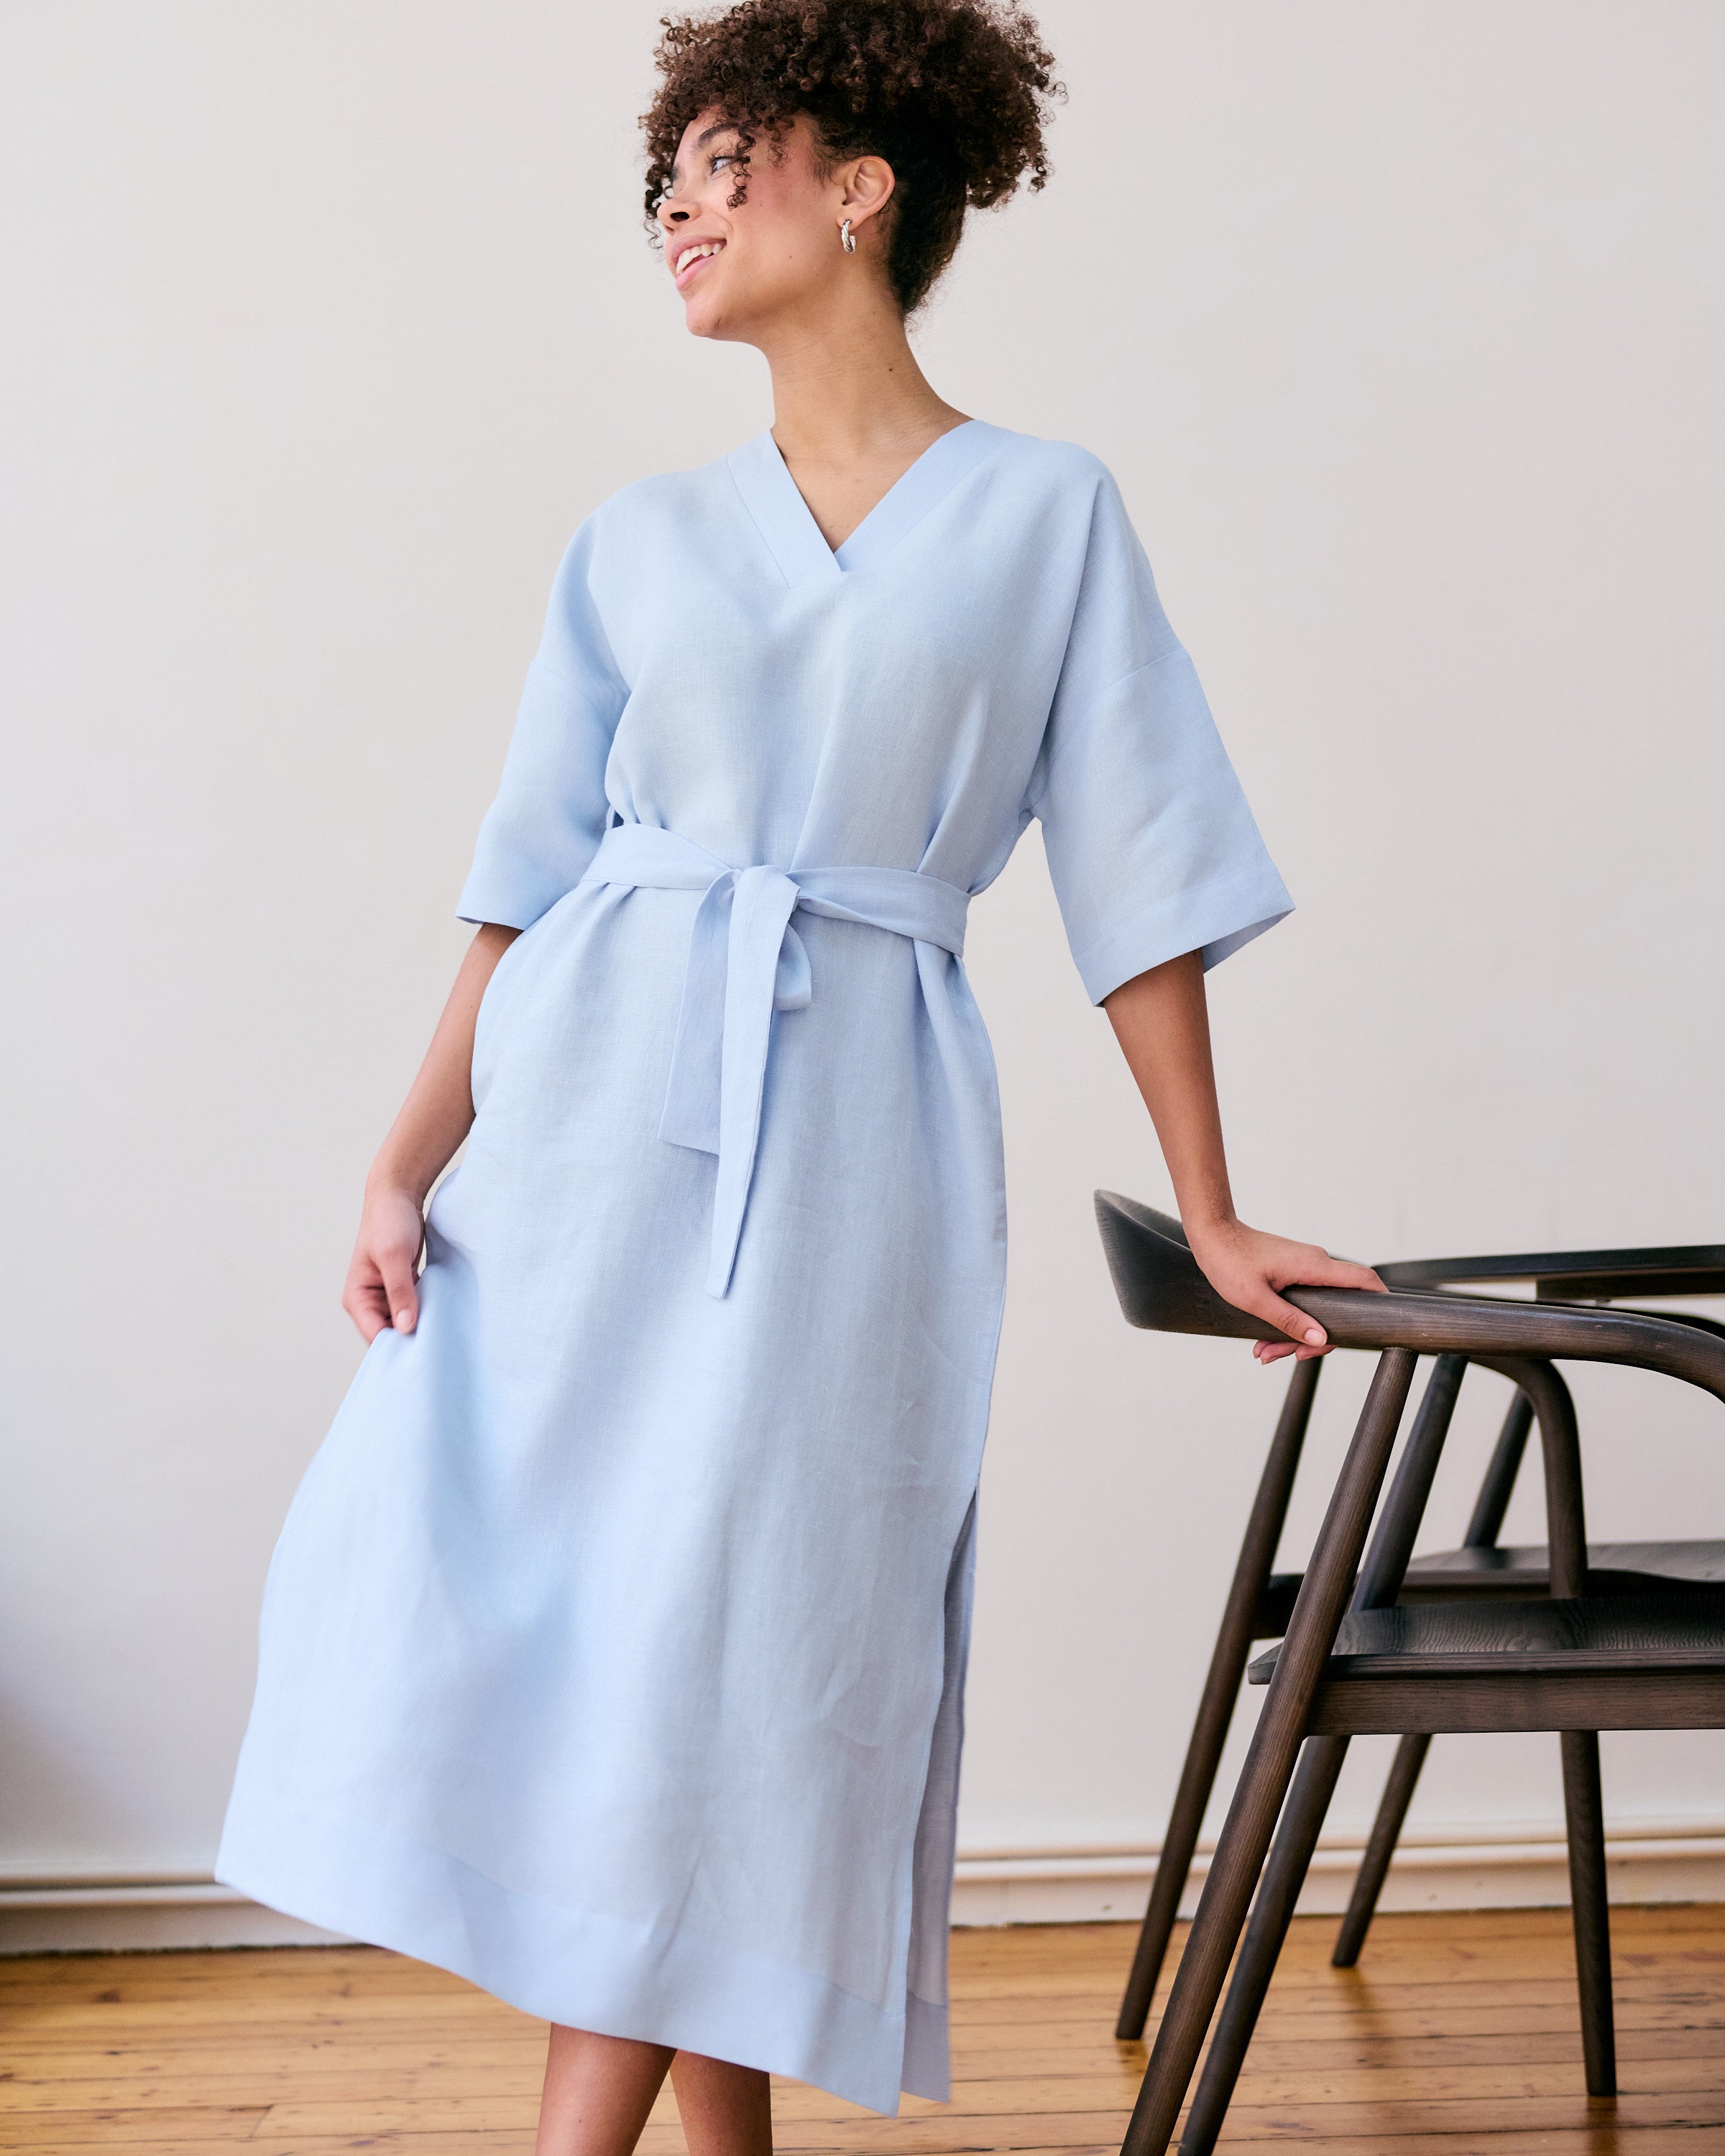 Comfortable, straight, light blue linen dress with belt.